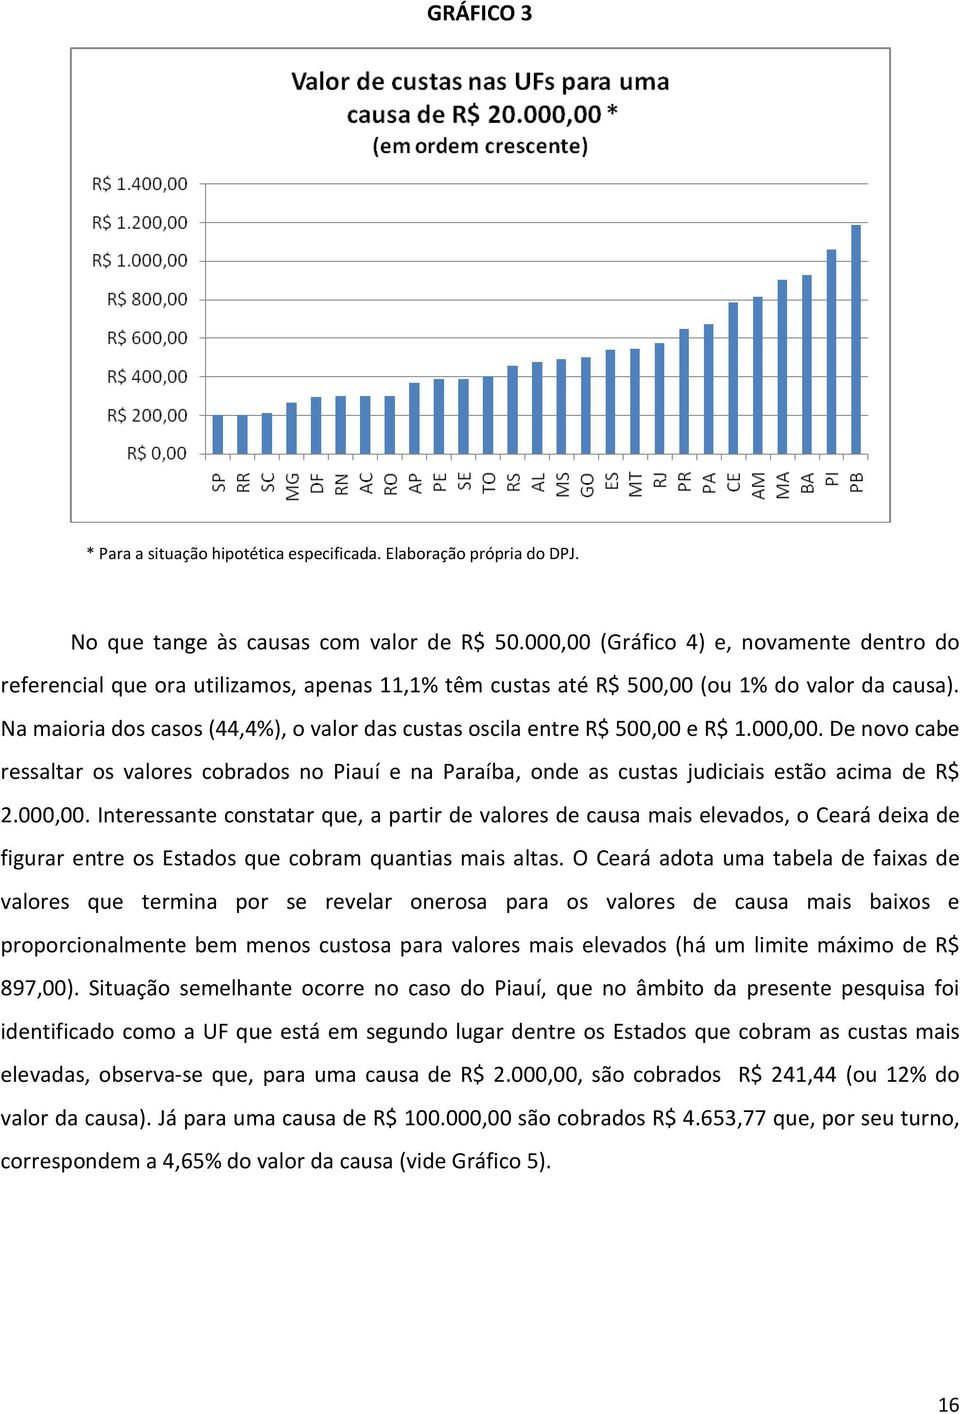 Na maioria dos casos (44,4%), o valor das custas oscila entre R$ 500,00 e R$ 1.000,00. De novo cabe ressaltar os valores cobrados no Piauí e na Paraíba, onde as custas judiciais estão acima de R$ 2.